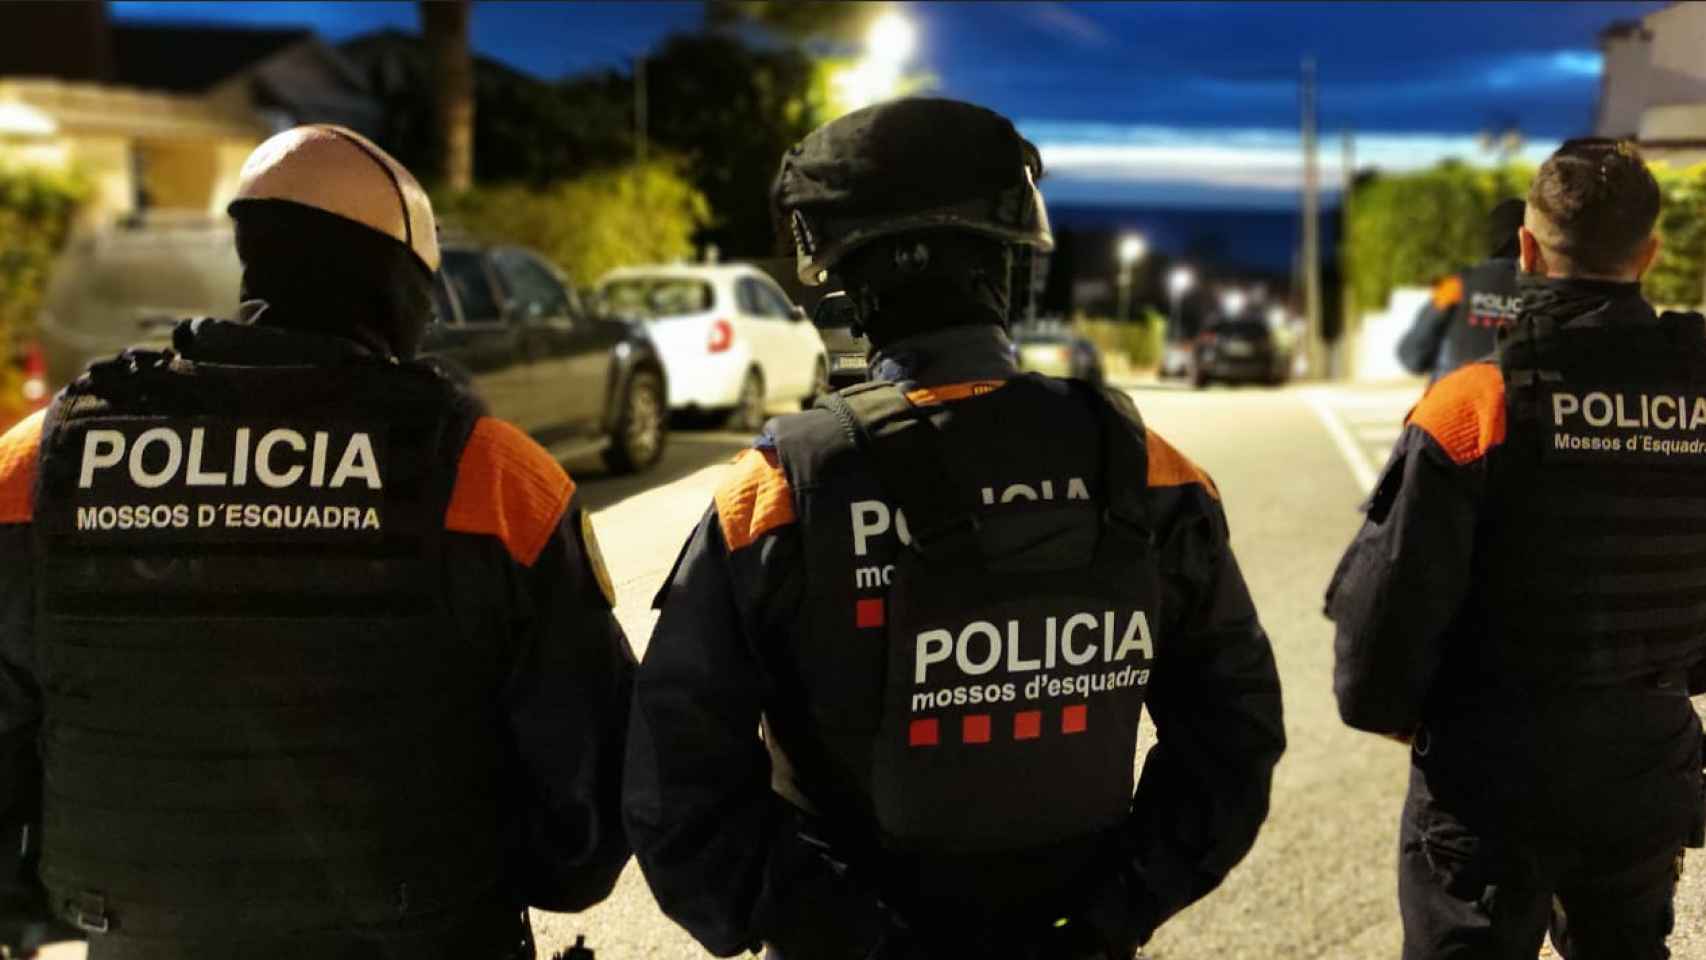 Agentes de la División de Investigación Criminal (DIC) durante el operativo contra el tráfico de marihuana en Cataluña / MOSSOS D'ESQUADRA